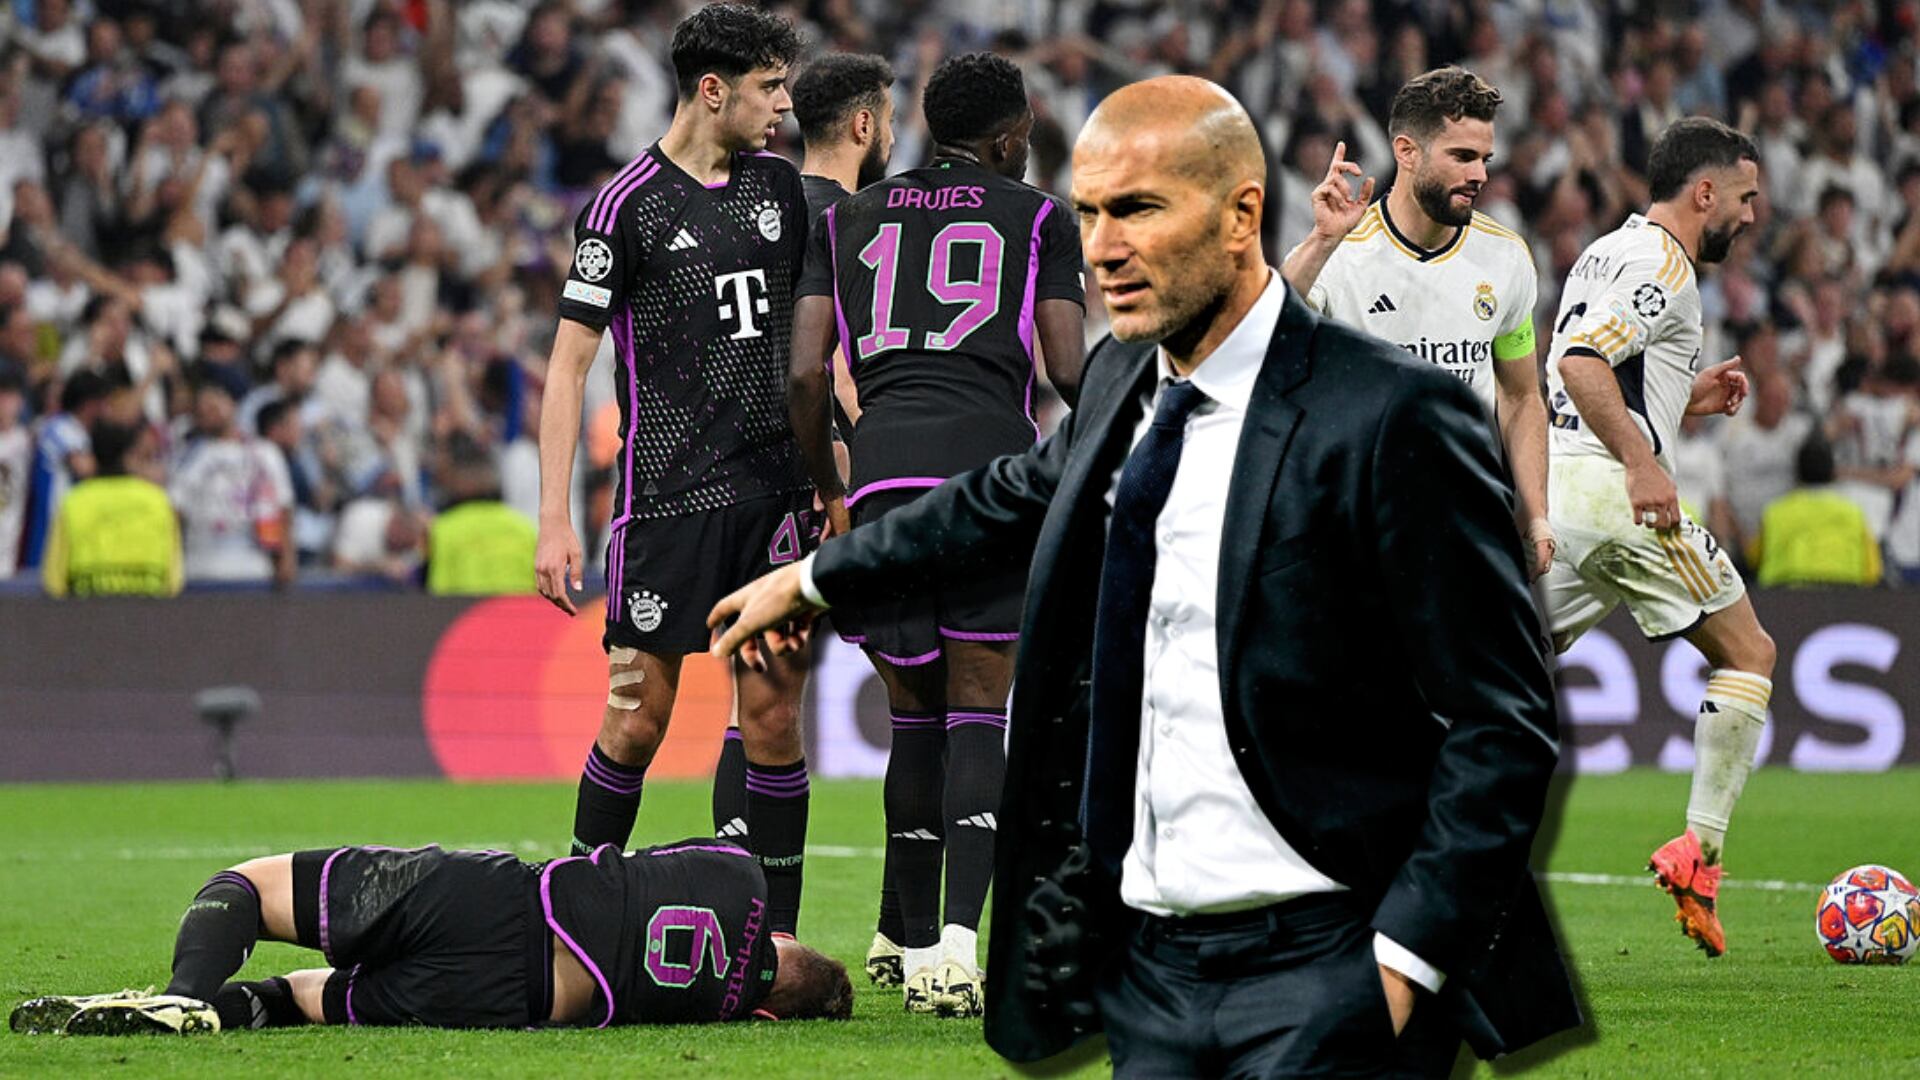 El Madrid los eliminó y ahora Zidane prefiere dirigir este club antes que el Bayern